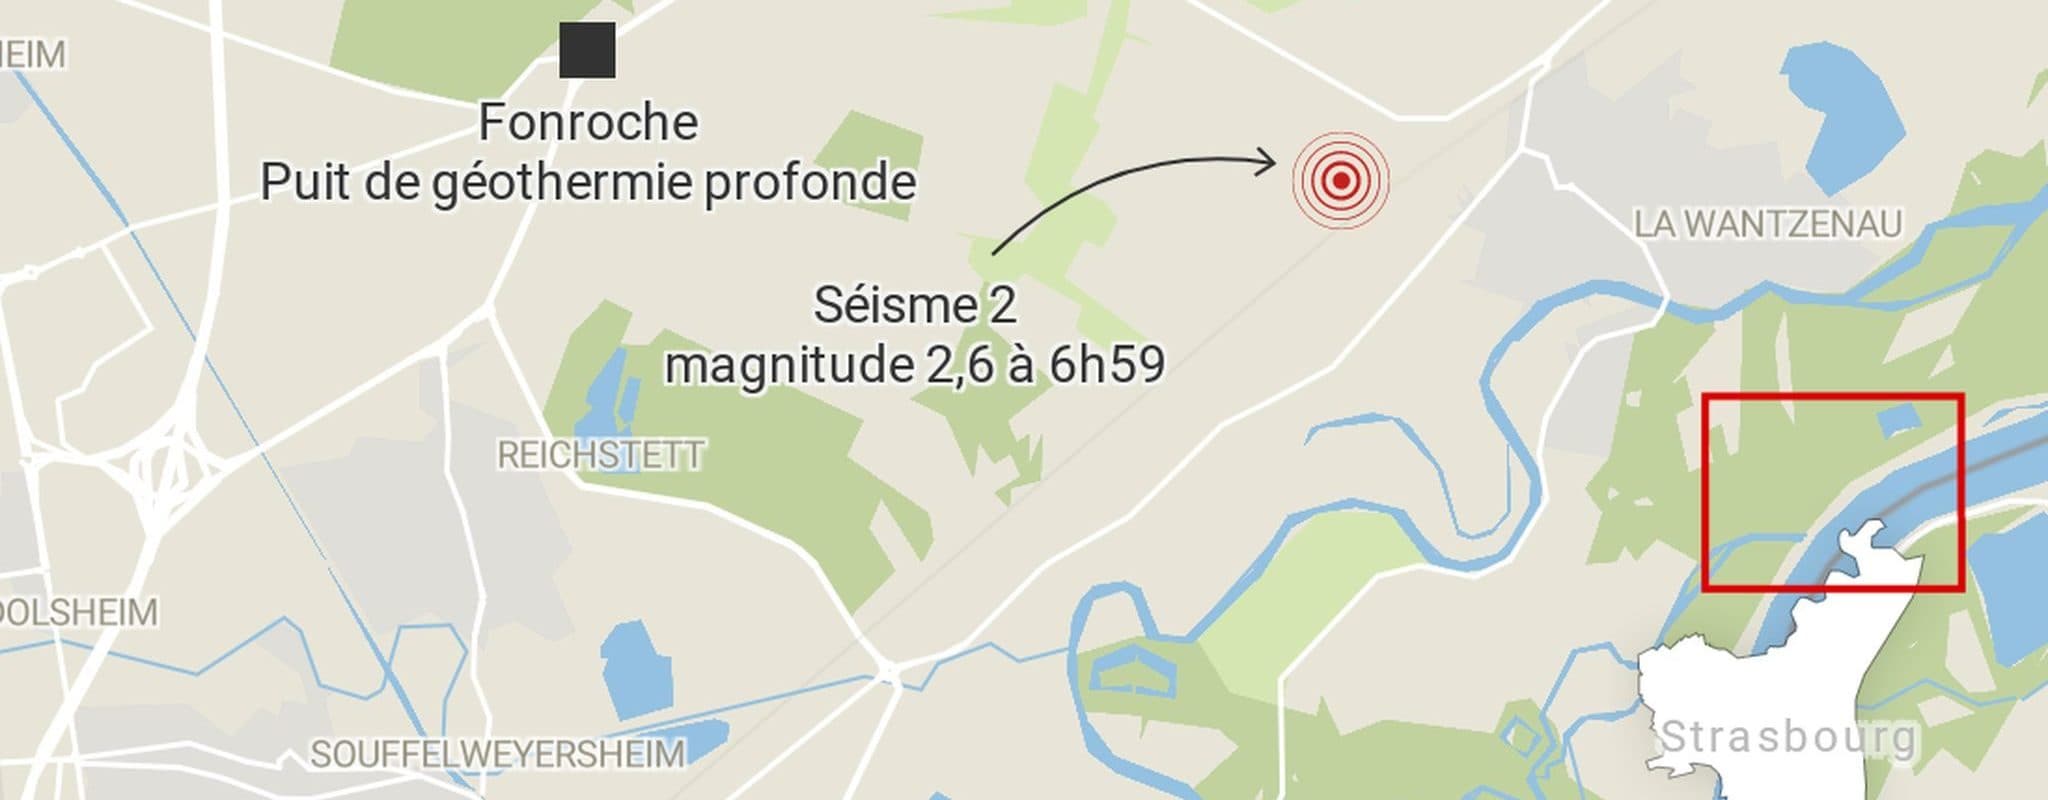 Après trois séismes au nord de Strasbourg, Fonroche annonce un arrêt complet temporaire du puits de géothermie